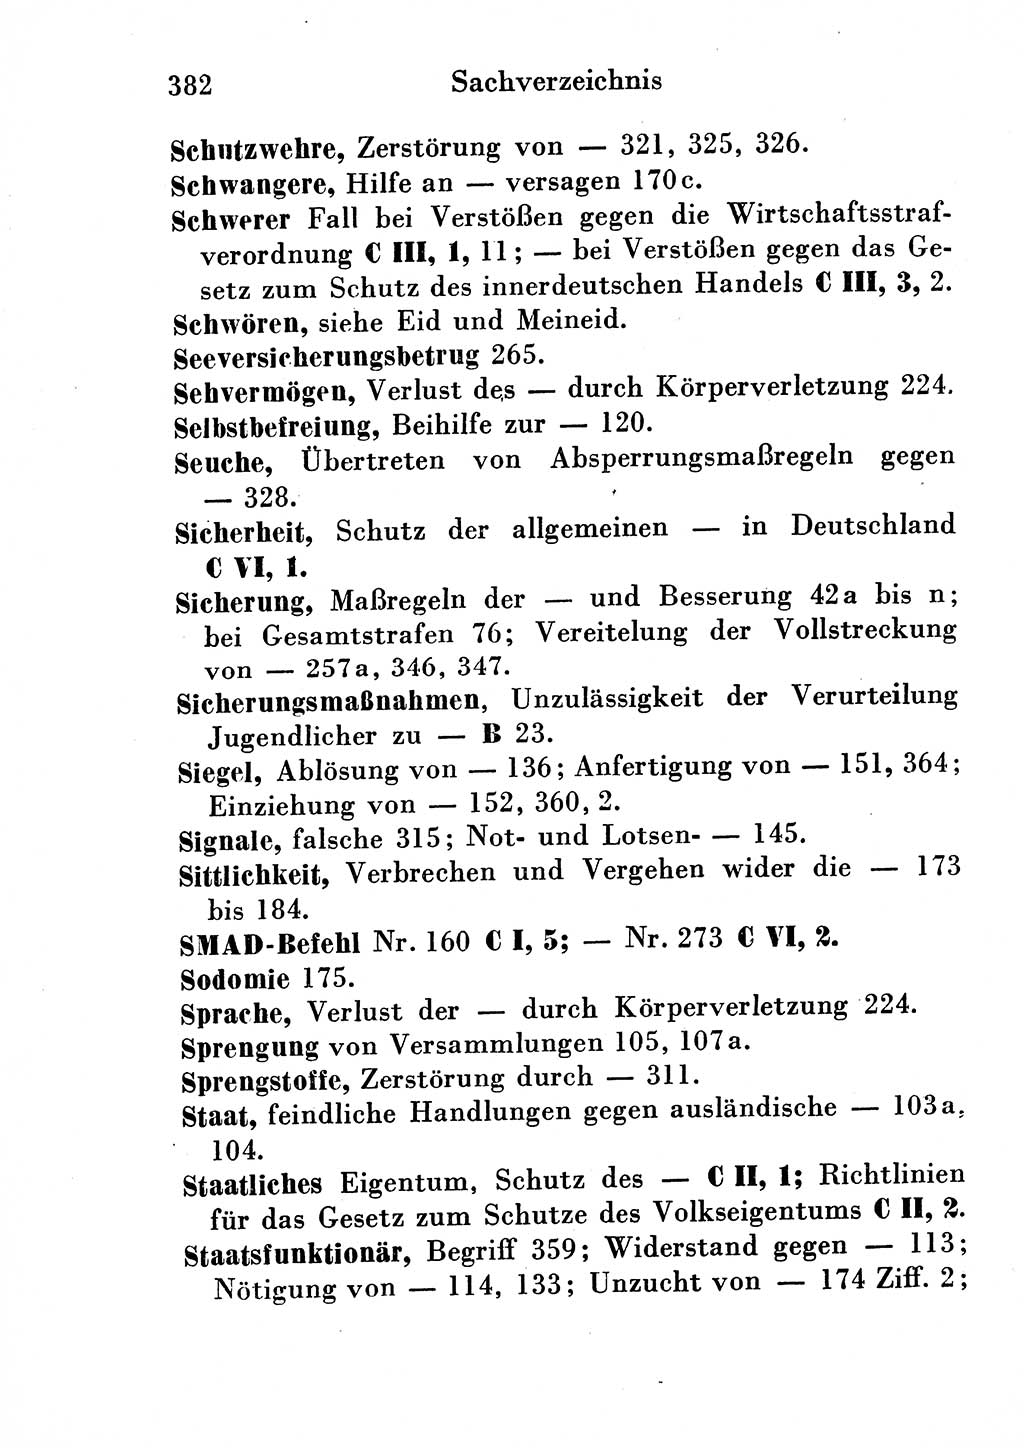 Strafgesetzbuch (StGB) und andere Strafgesetze [Deutsche Demokratische Republik (DDR)] 1954, Seite 382 (StGB Strafges. DDR 1954, S. 382)